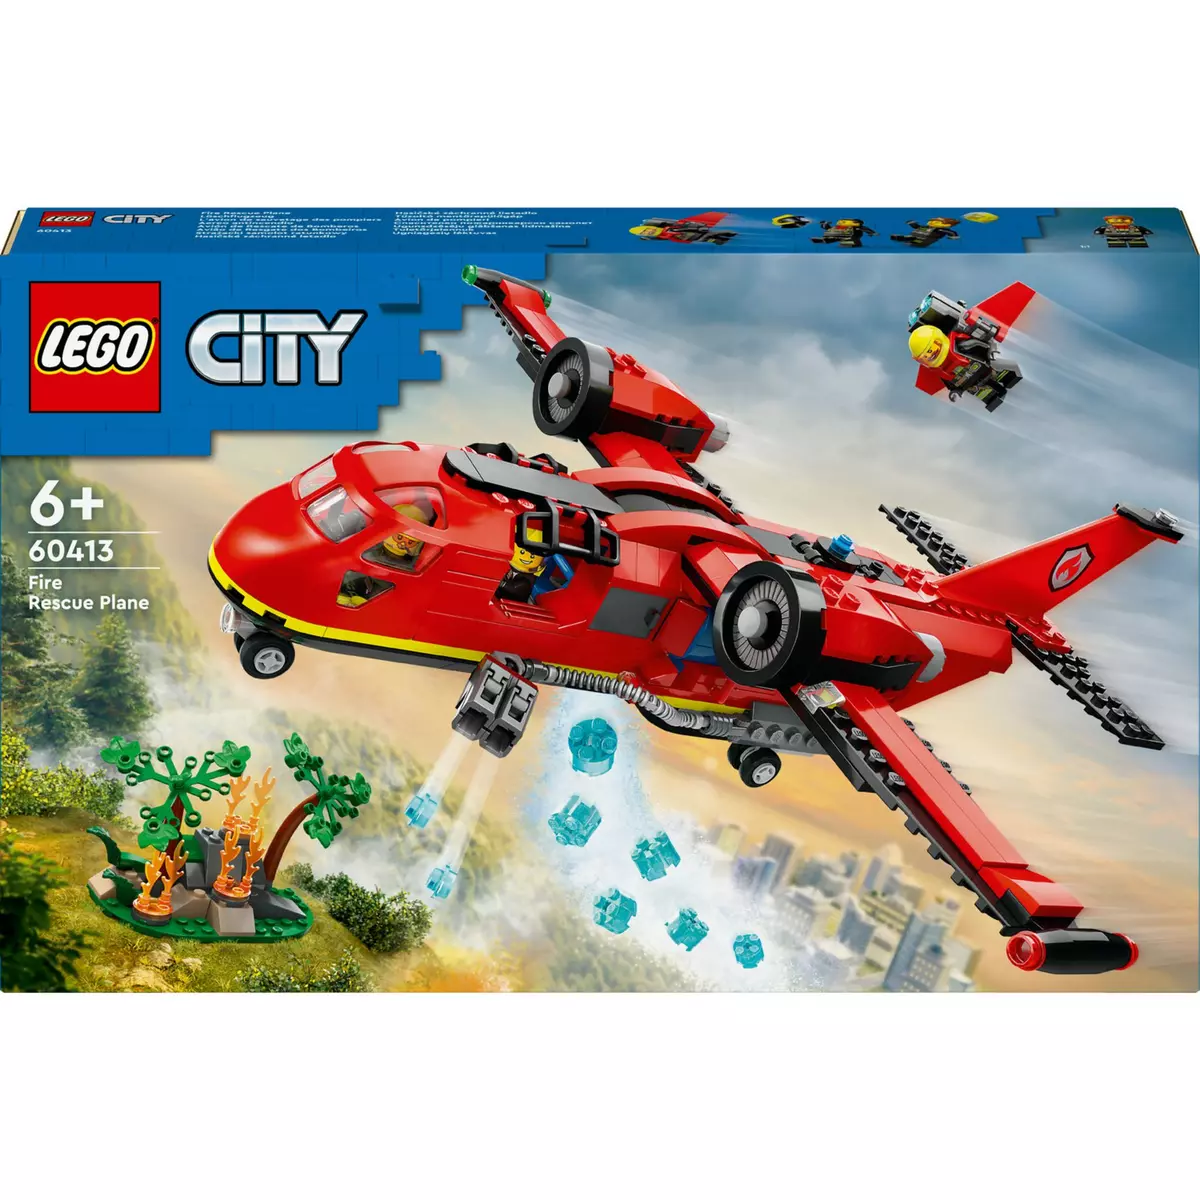 La caserne et le camion des pompiers - LEGO® City - 60375 - Jeux de  construction